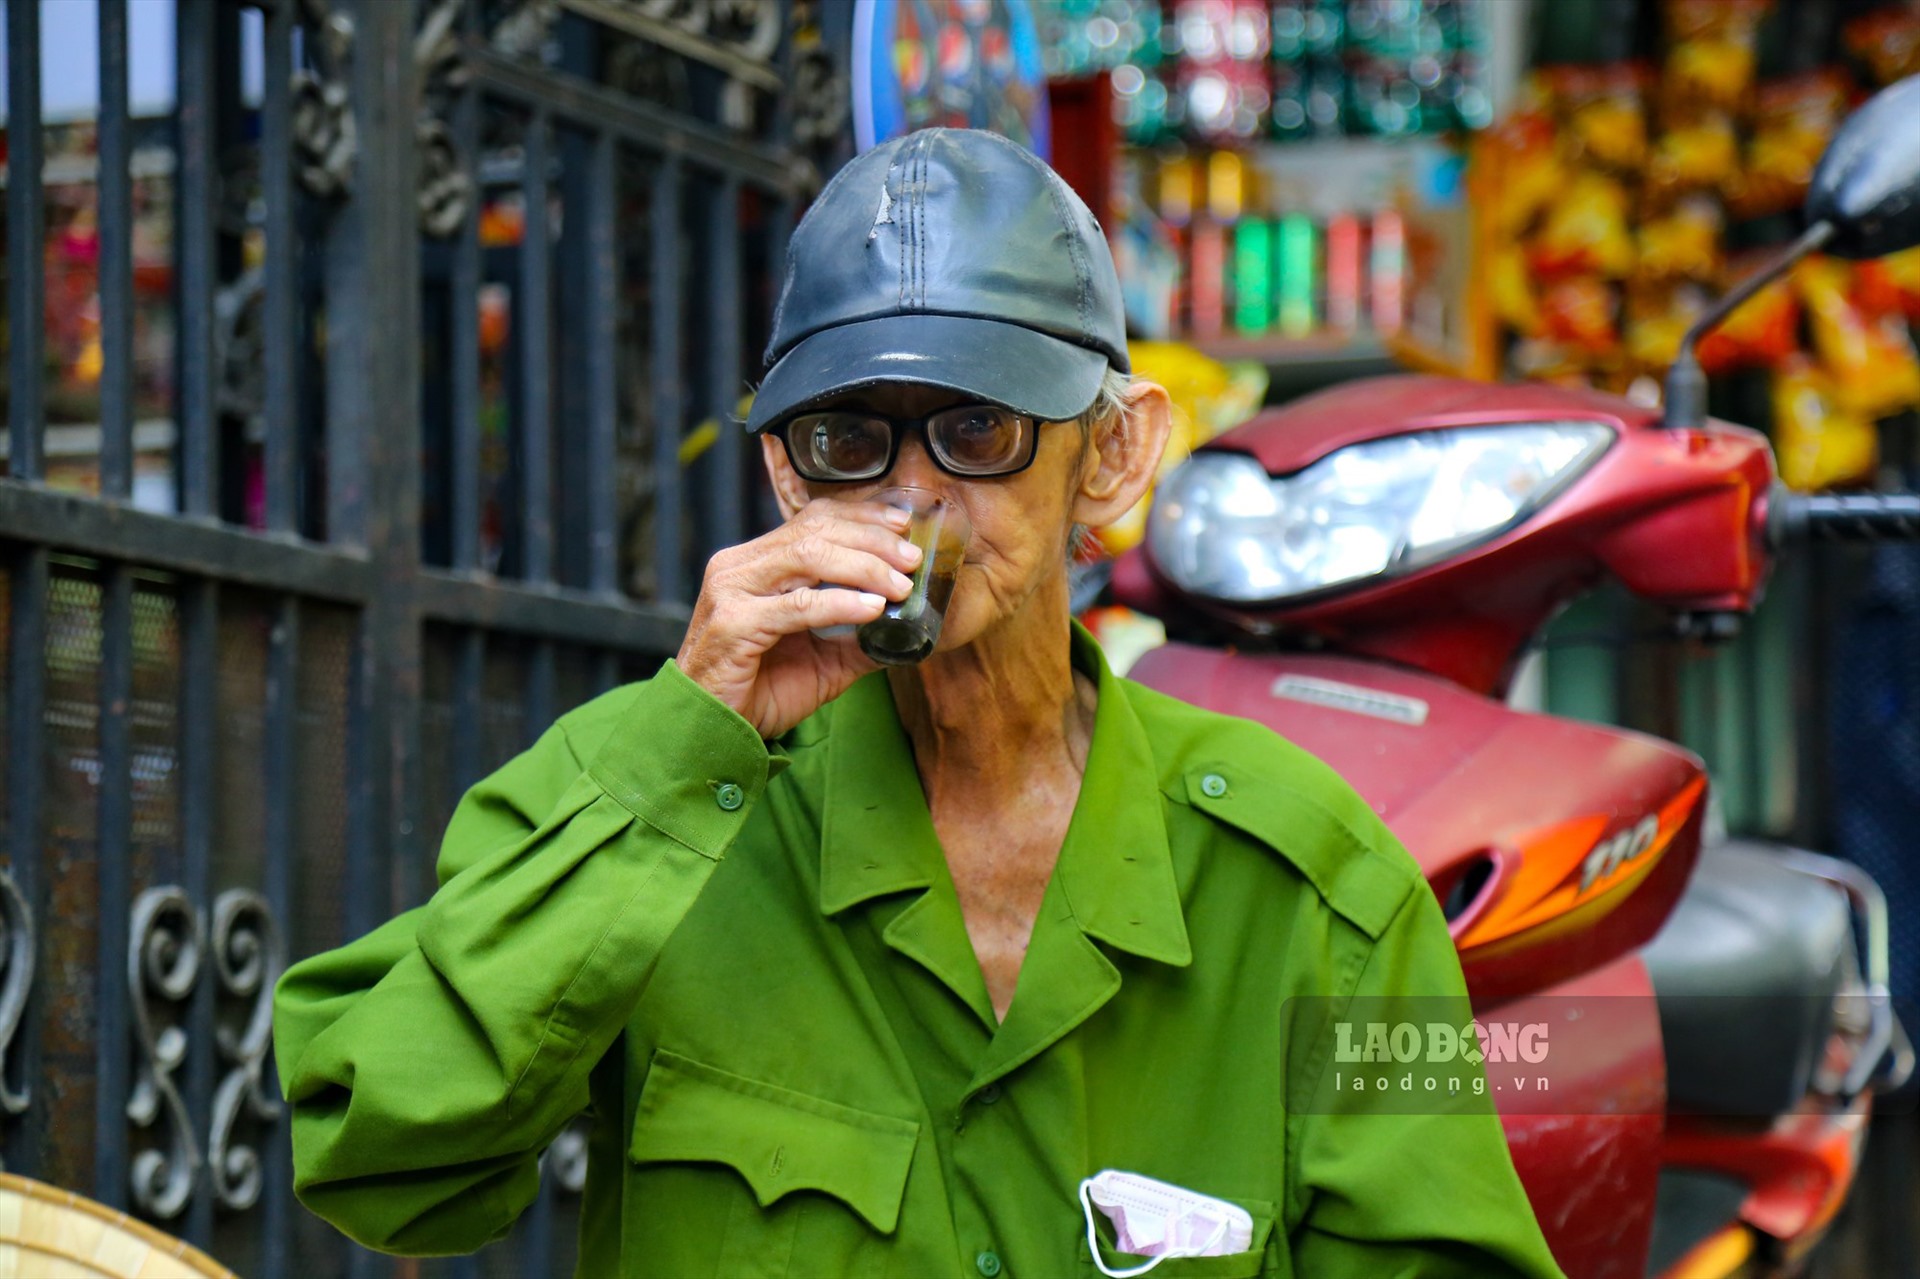 Ông Hùng (71 tuổi) cho biết mỗi sáng đều ra đây uống cà phê vì không gian quán gần gũi, cà phê thơm và được buôn chuyện cùng bạn bè.